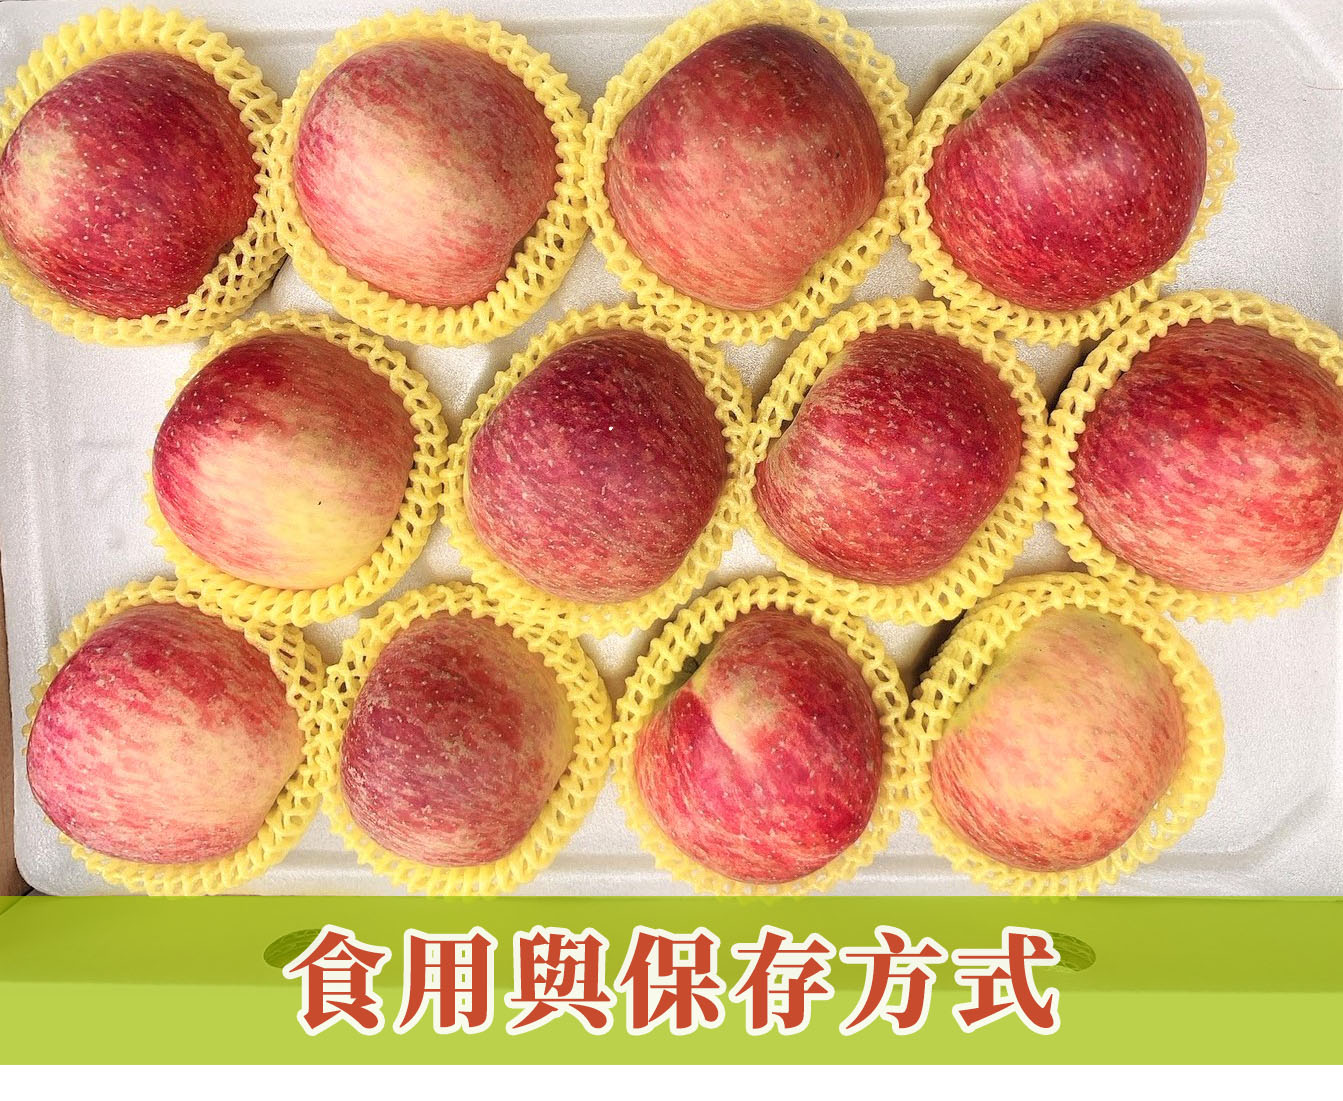 梨山蜜蘋果食用與保存方式